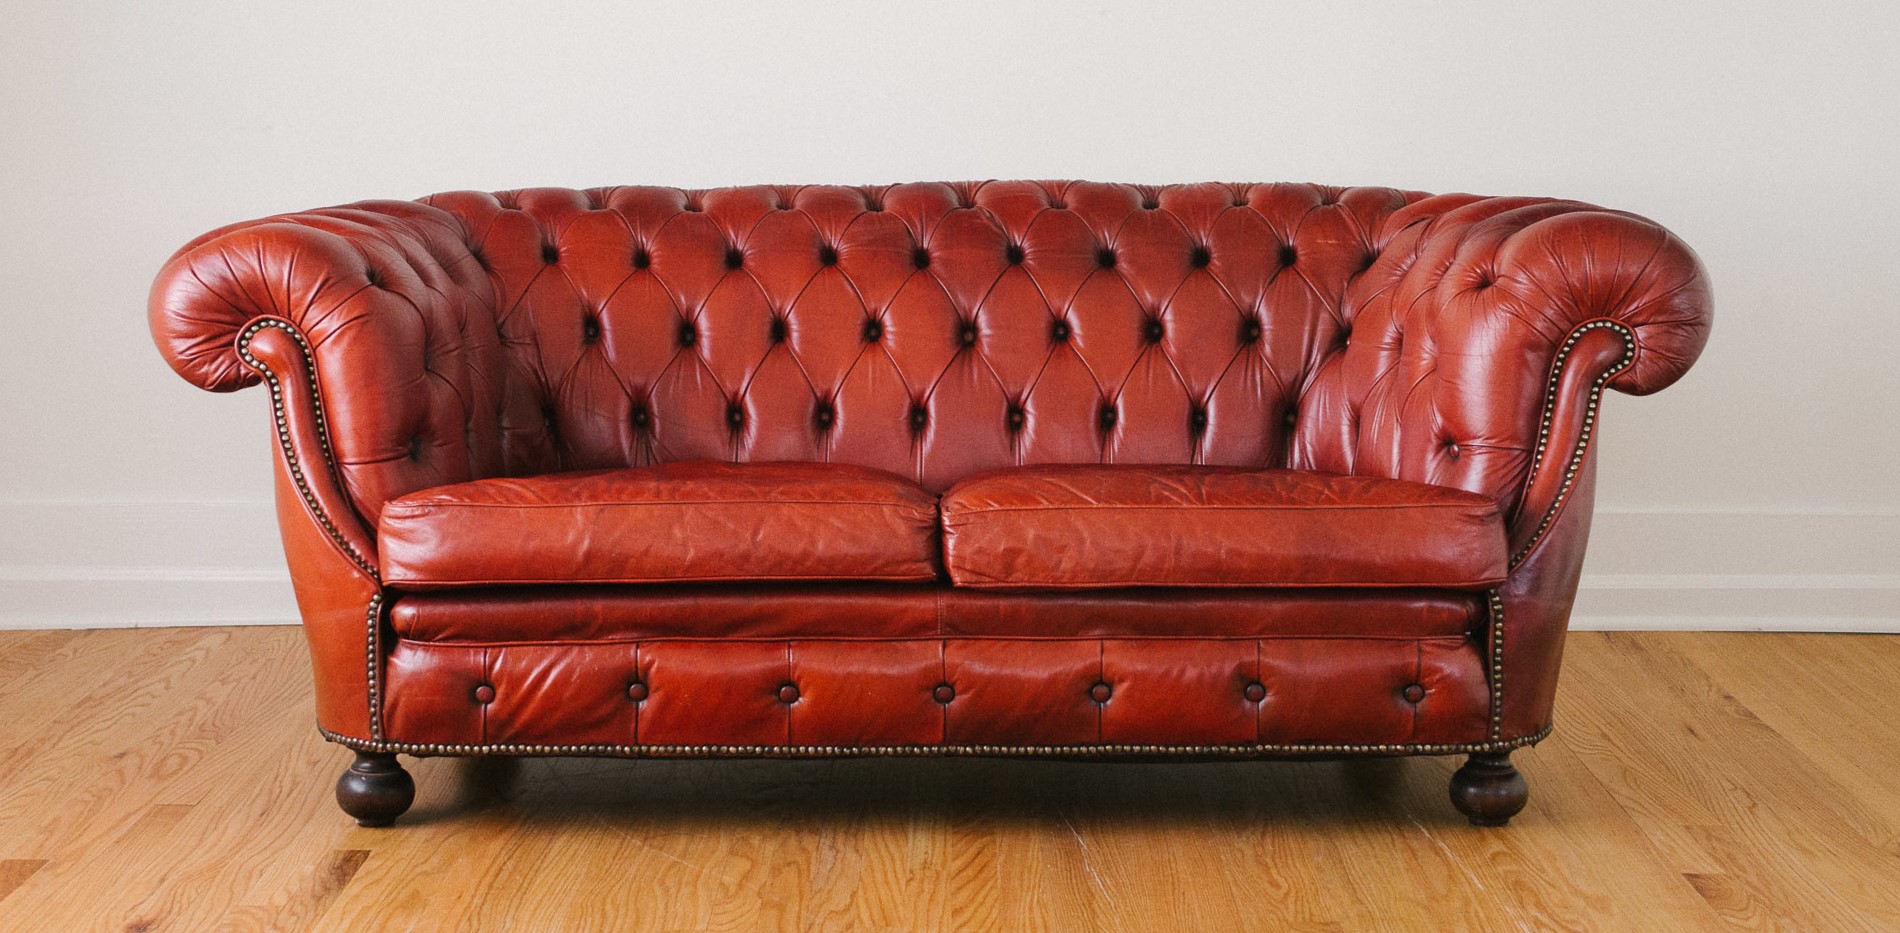 Кожаный диван идеально подойдет для классического интерьера